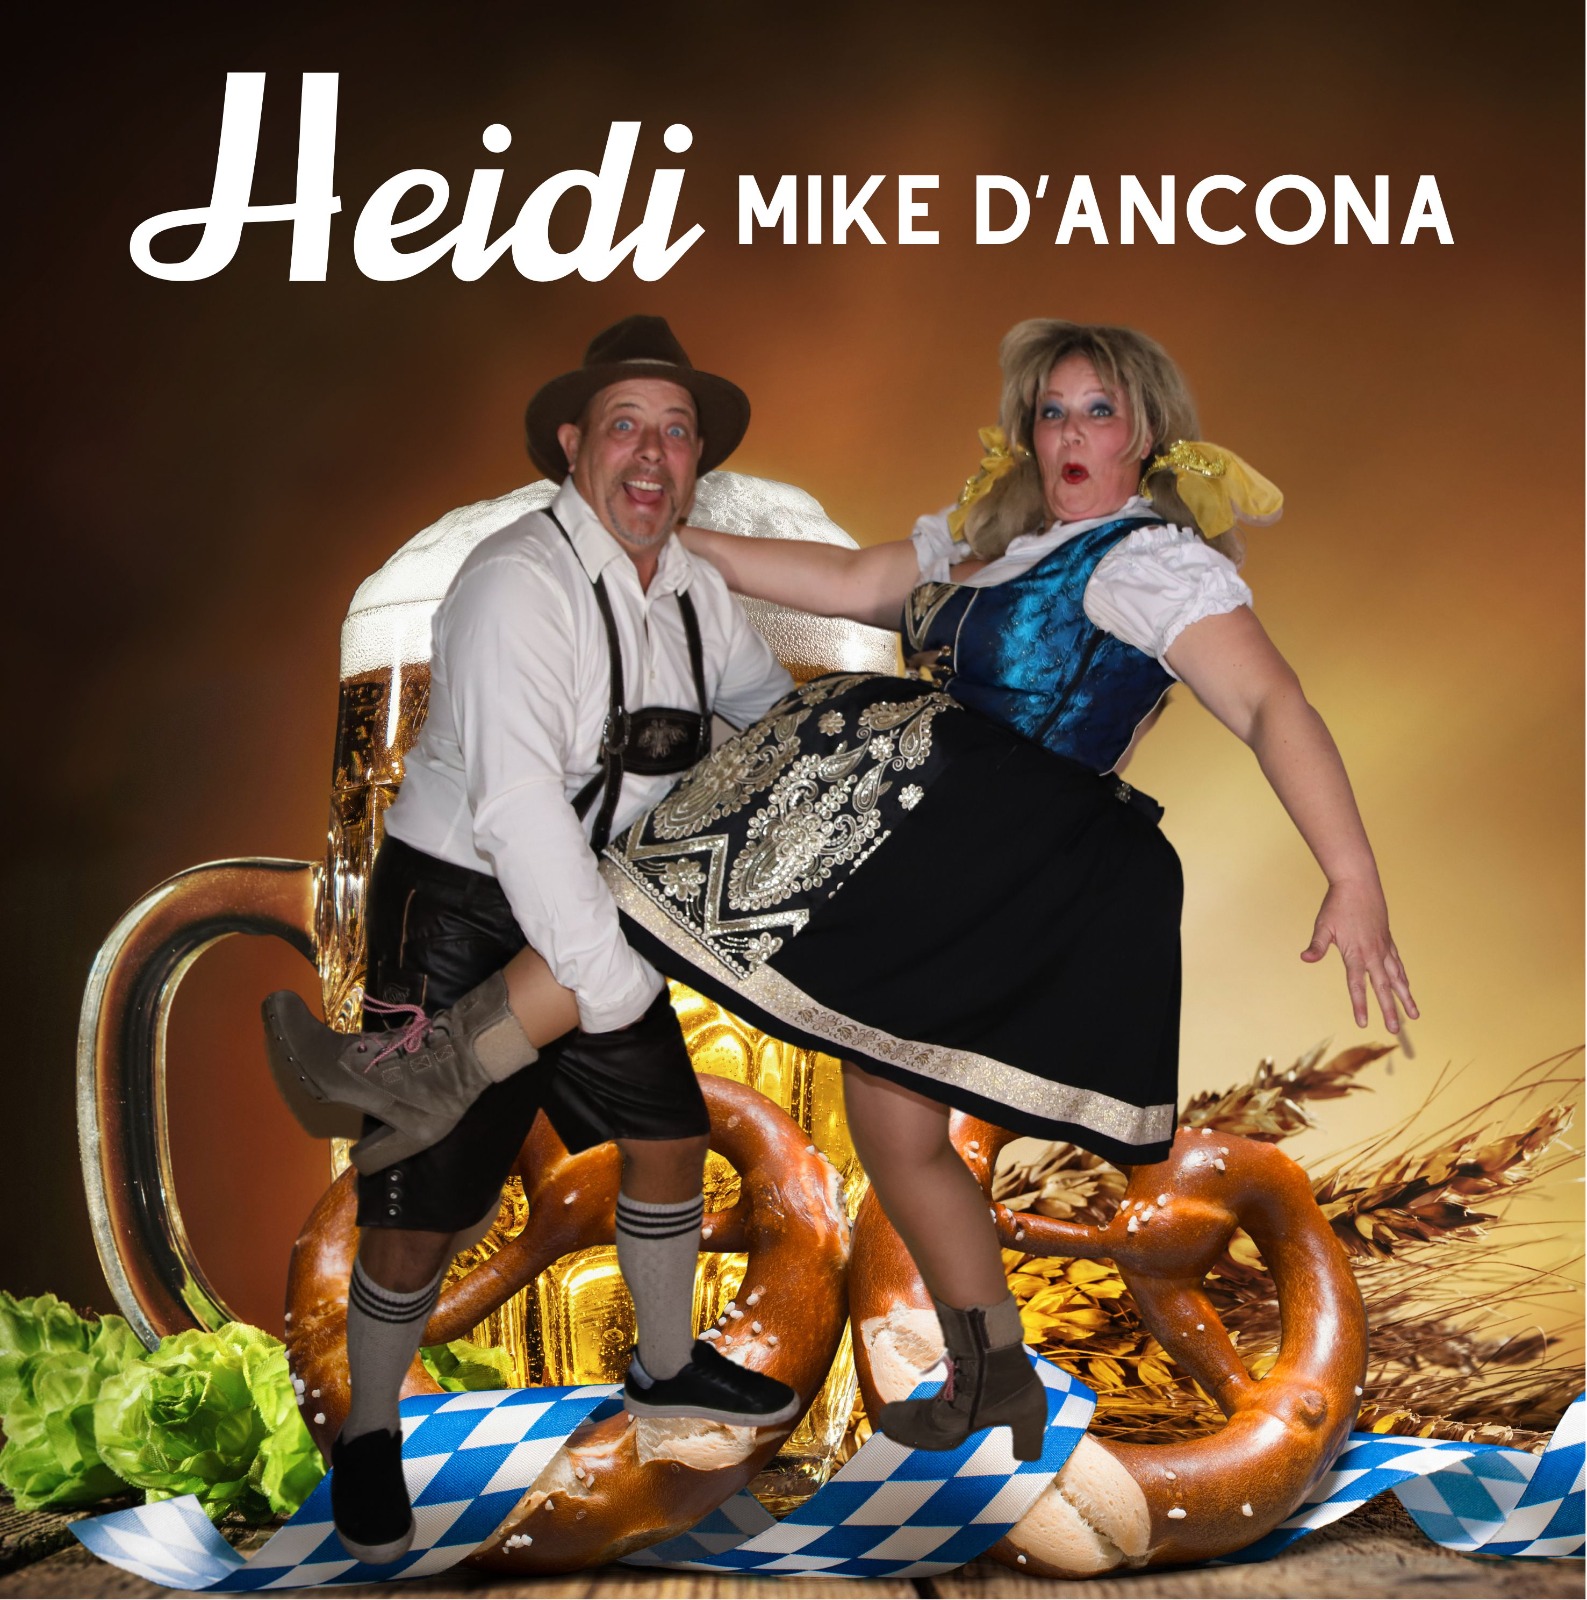 Mike DAncona - Heidi